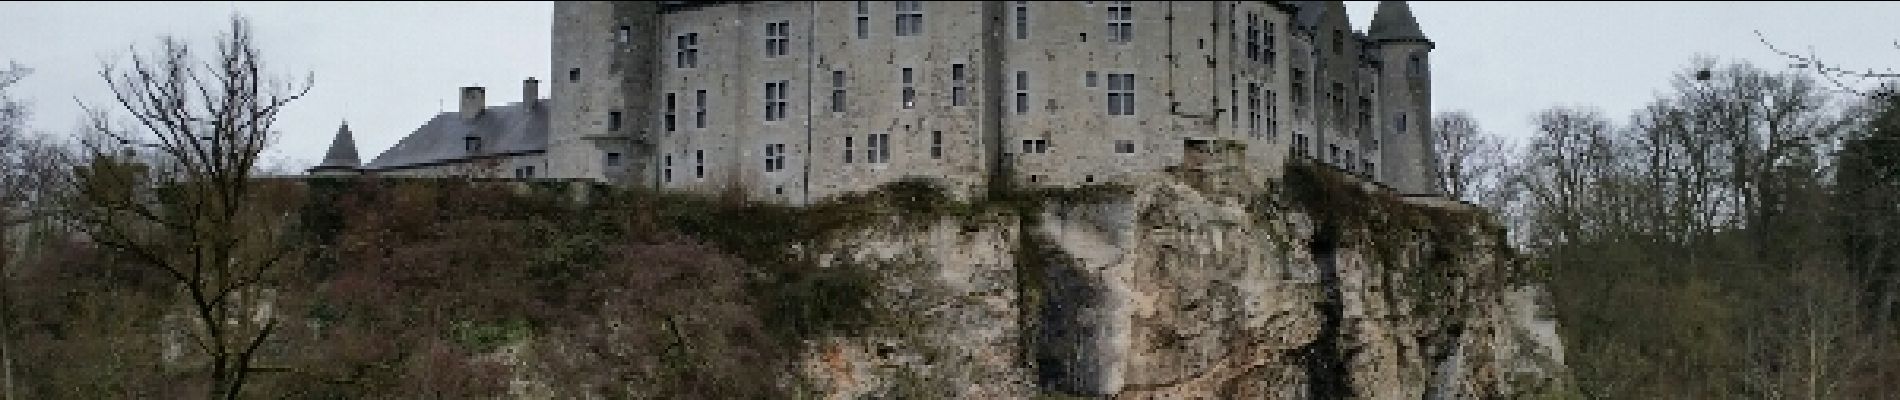 Point d'intérêt Dinant - Château de Walzin - Photo